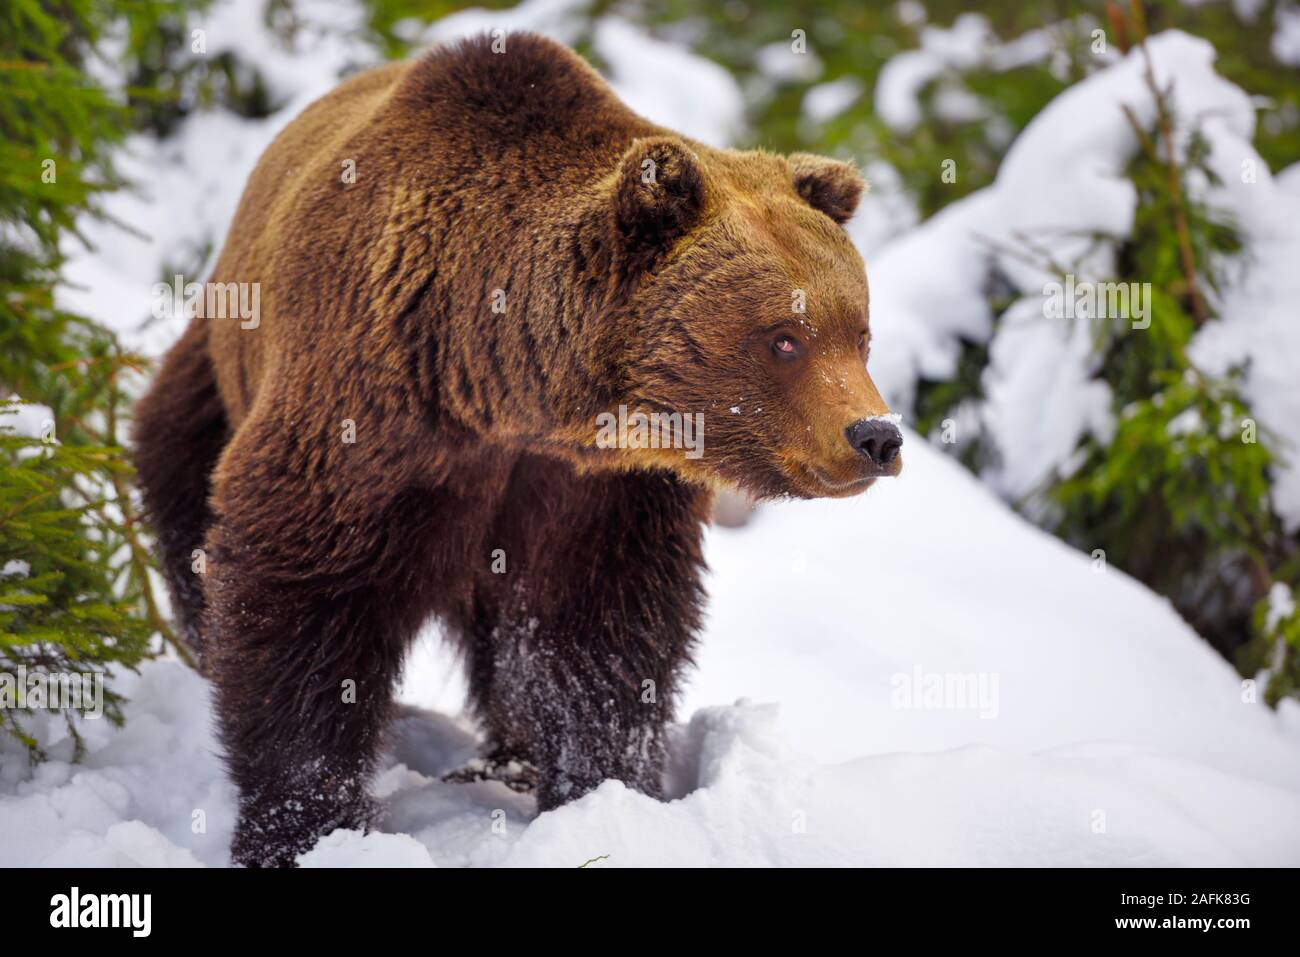 Wild brown bear (Ursus arctos) sur la neige Banque D'Images